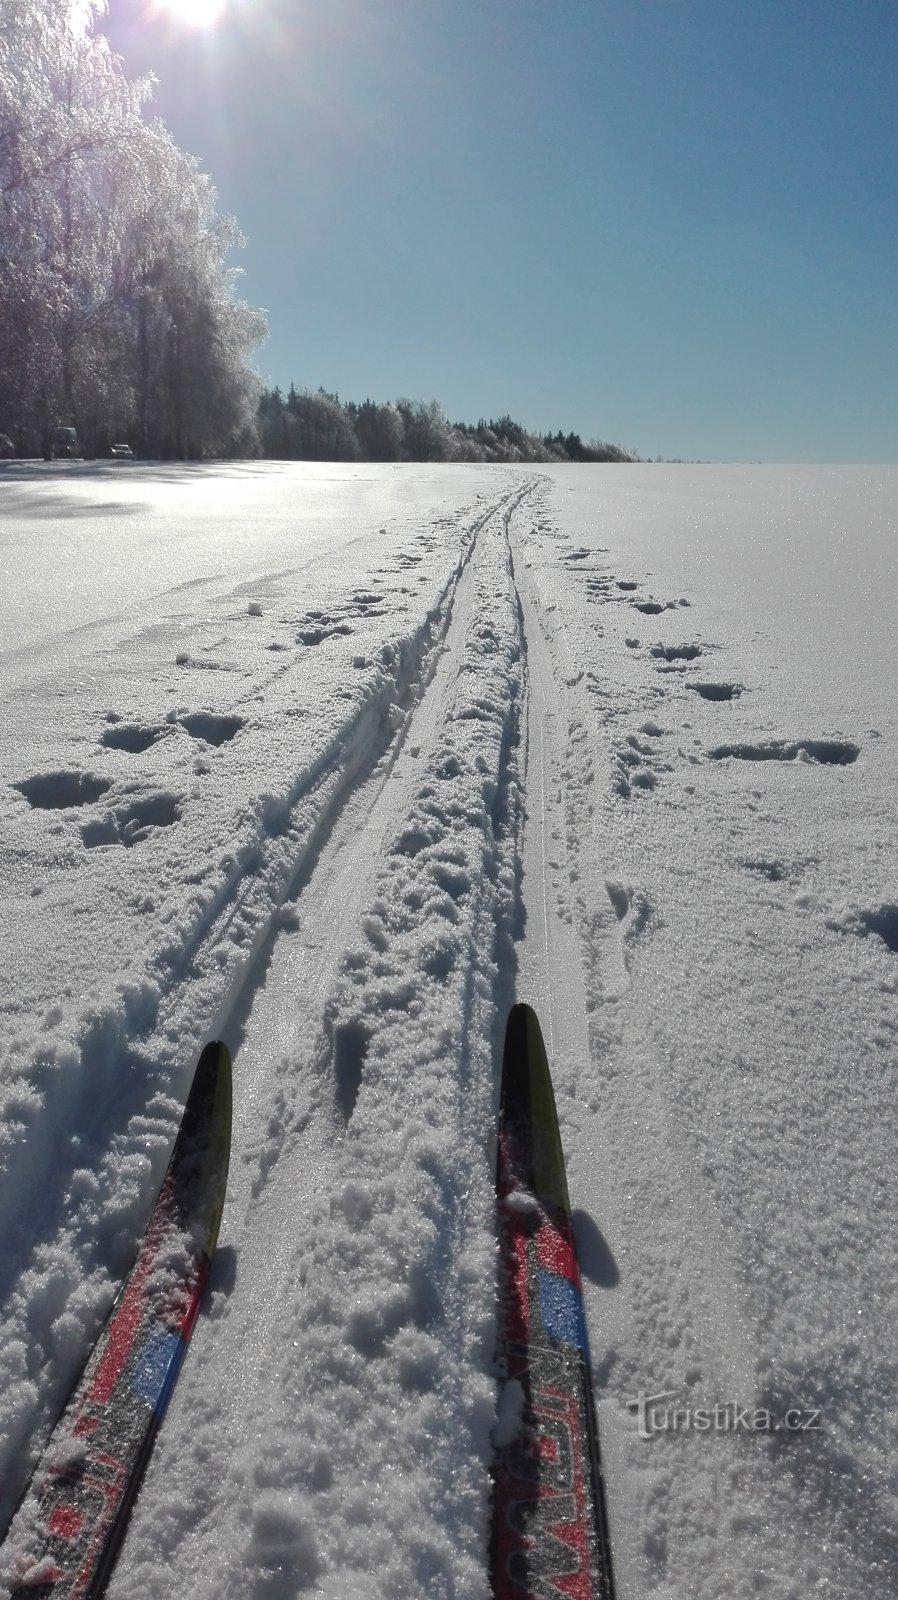 Winterliches Hochland auf Langlaufskiern - Langlaufloipe in Rozkoša.